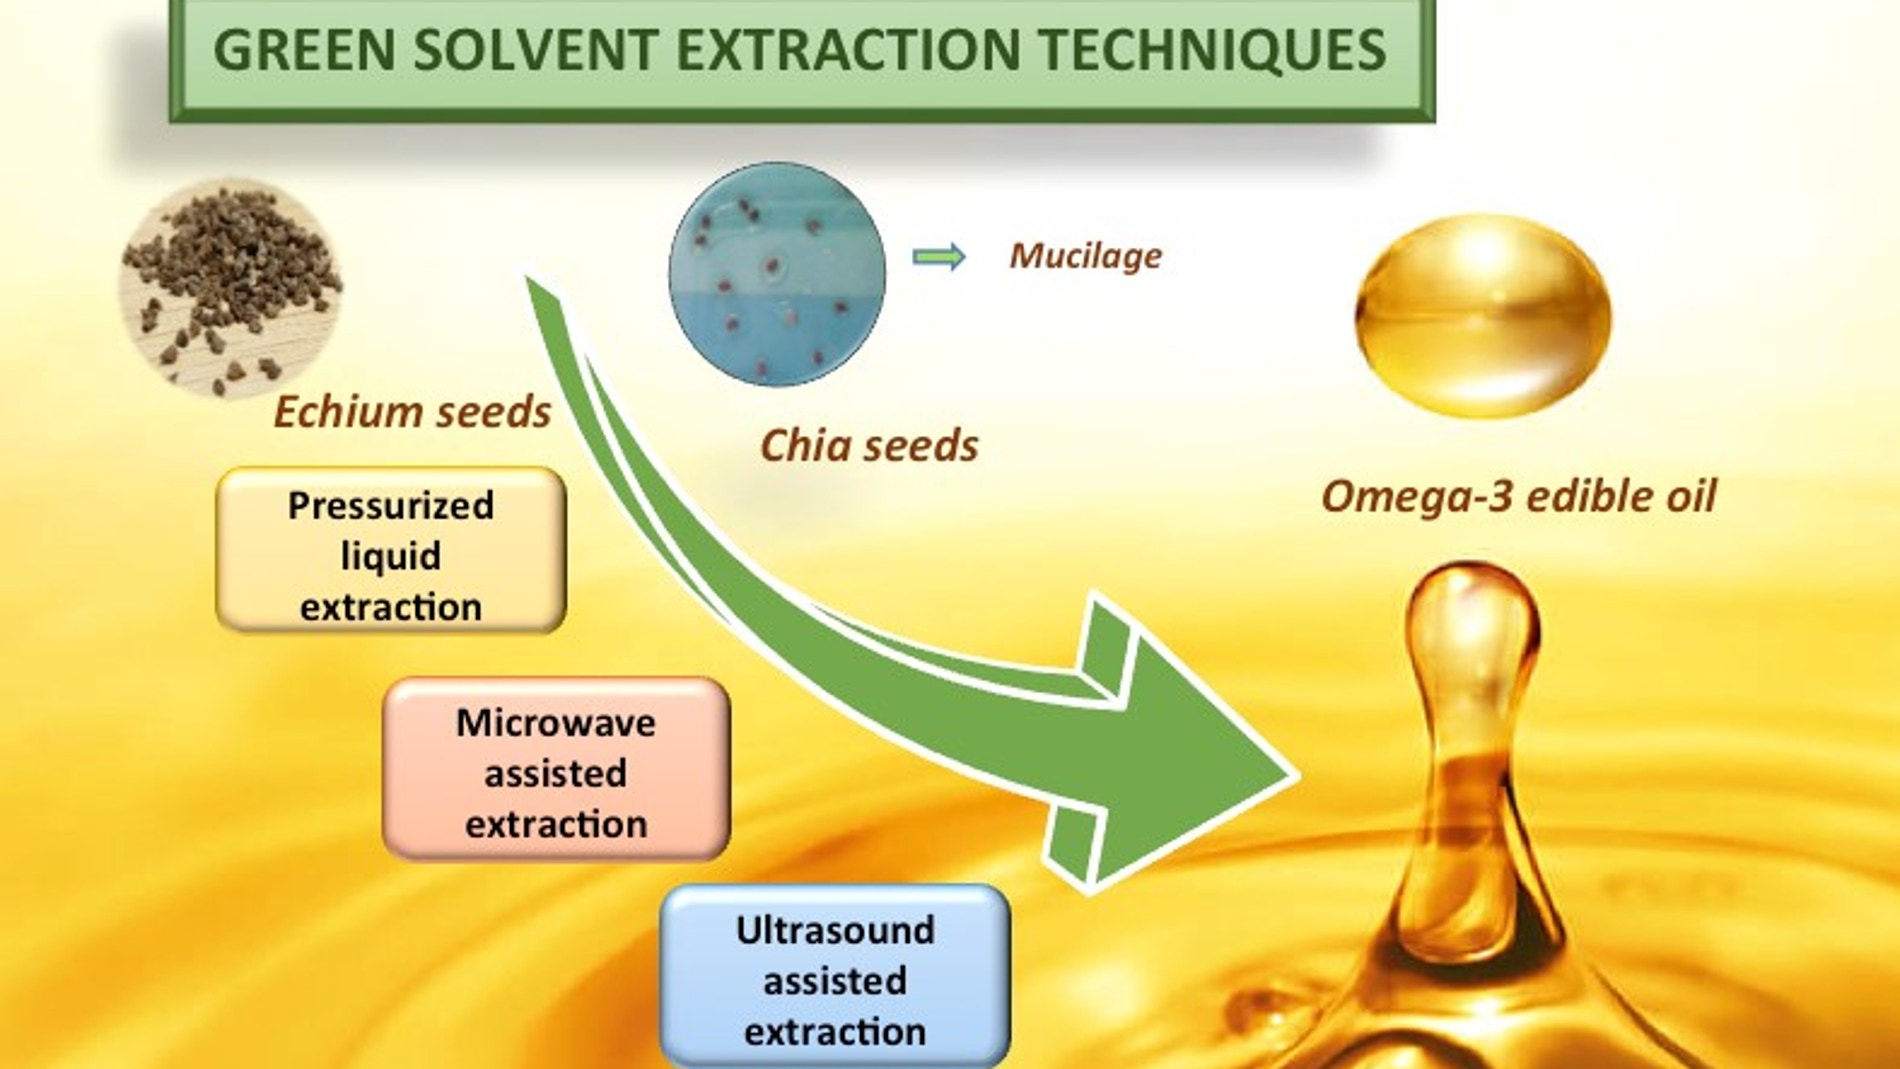 Diagrama de la técnica de extracción de aceites. Desde la semilla extracción mediante líquidos presurizados, extracción asistida por ultrasonidos o por microondas. 